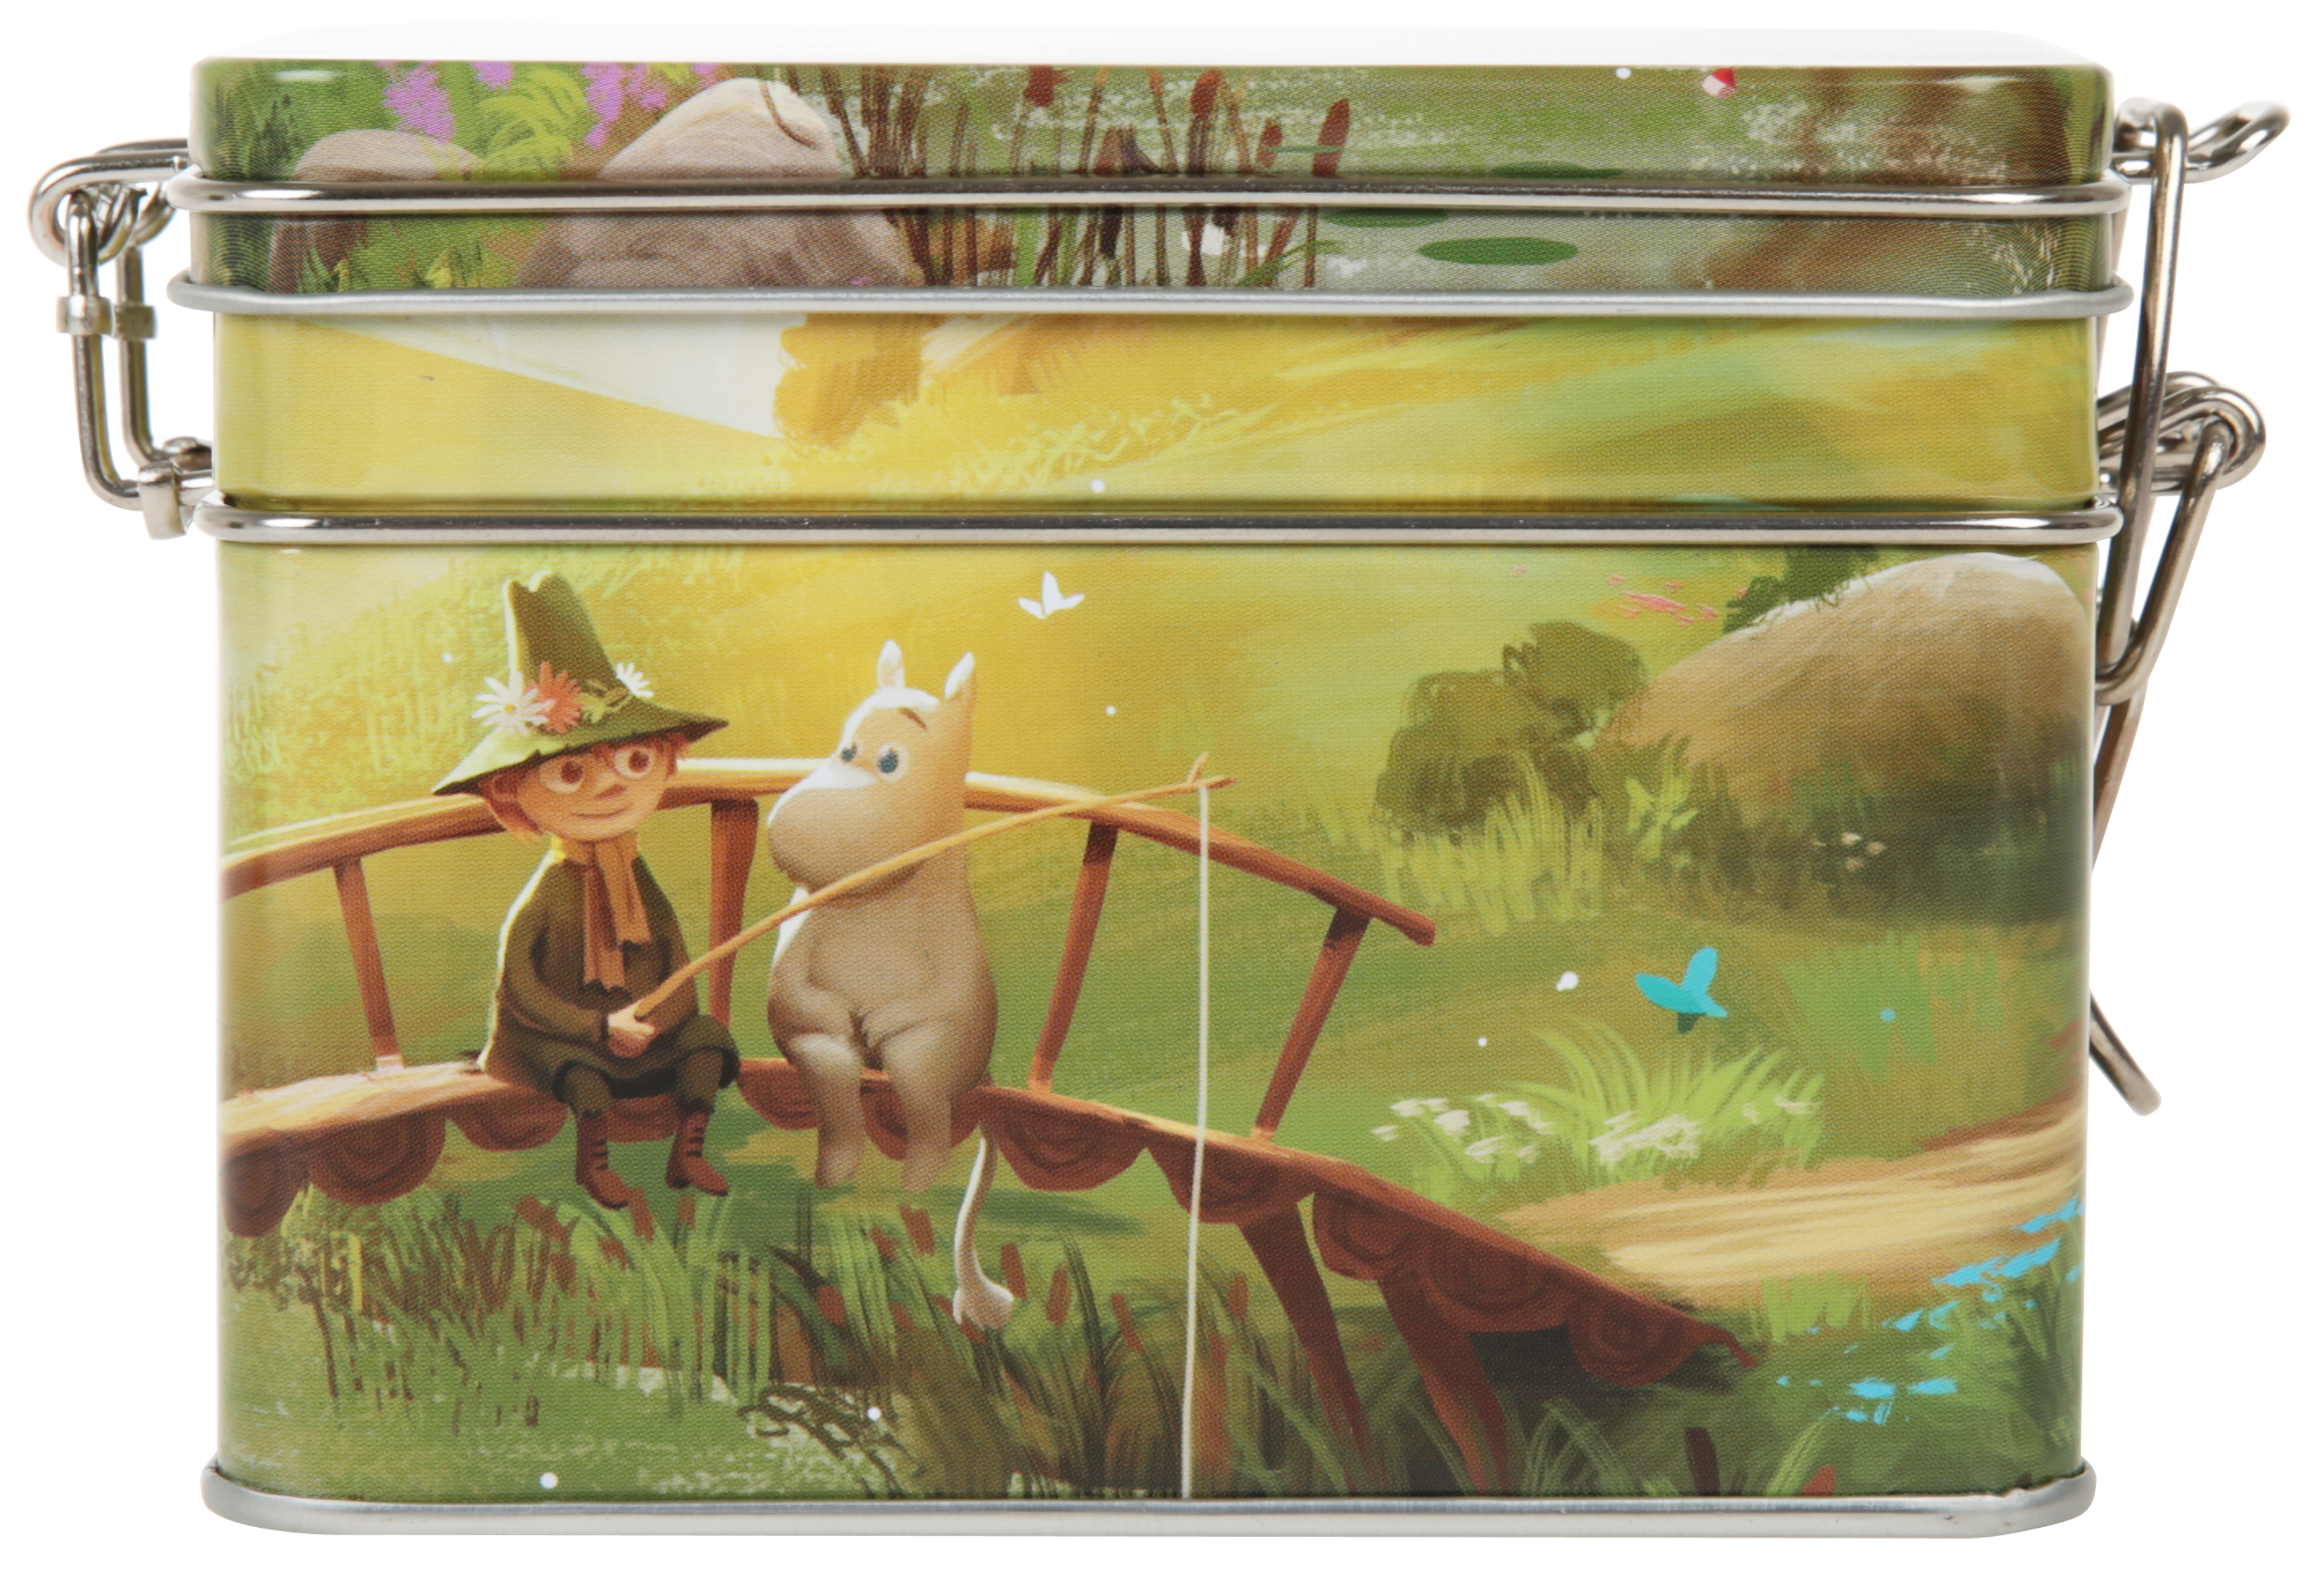 Martinex Moominvalley Animation Tea Tin Fishing